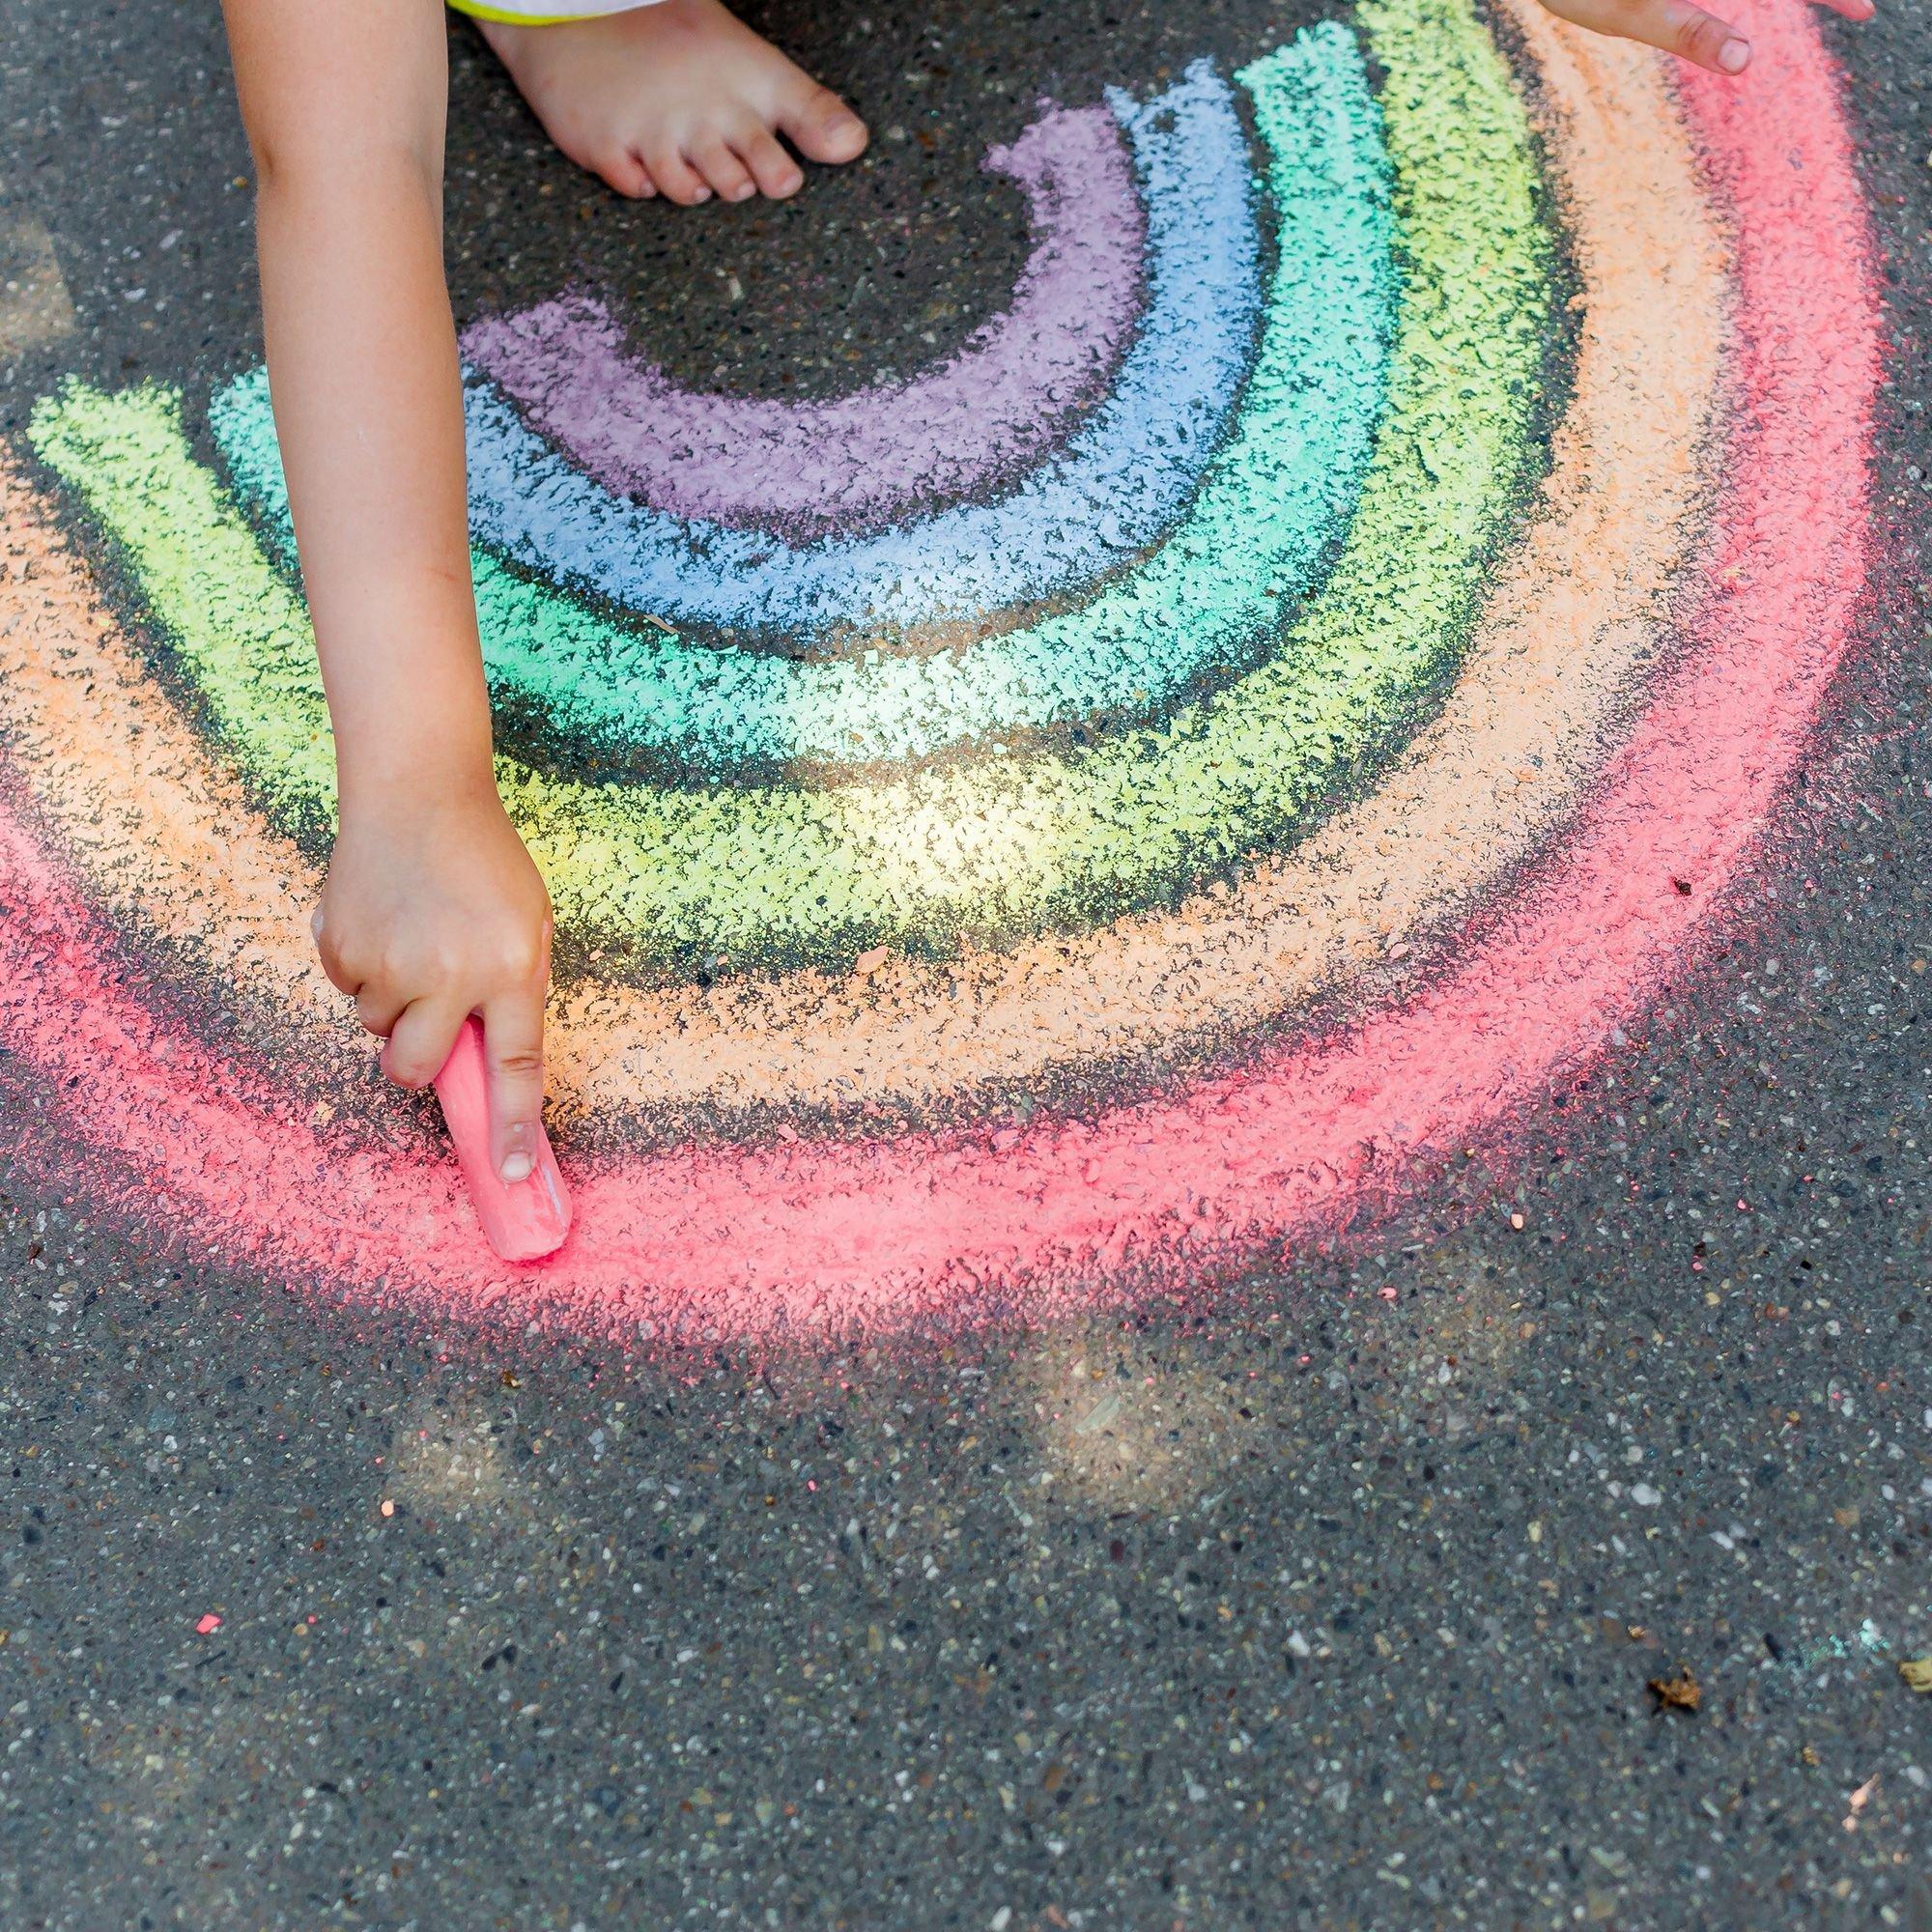 Sidewalk / playground chalk - Box of 100 assorted